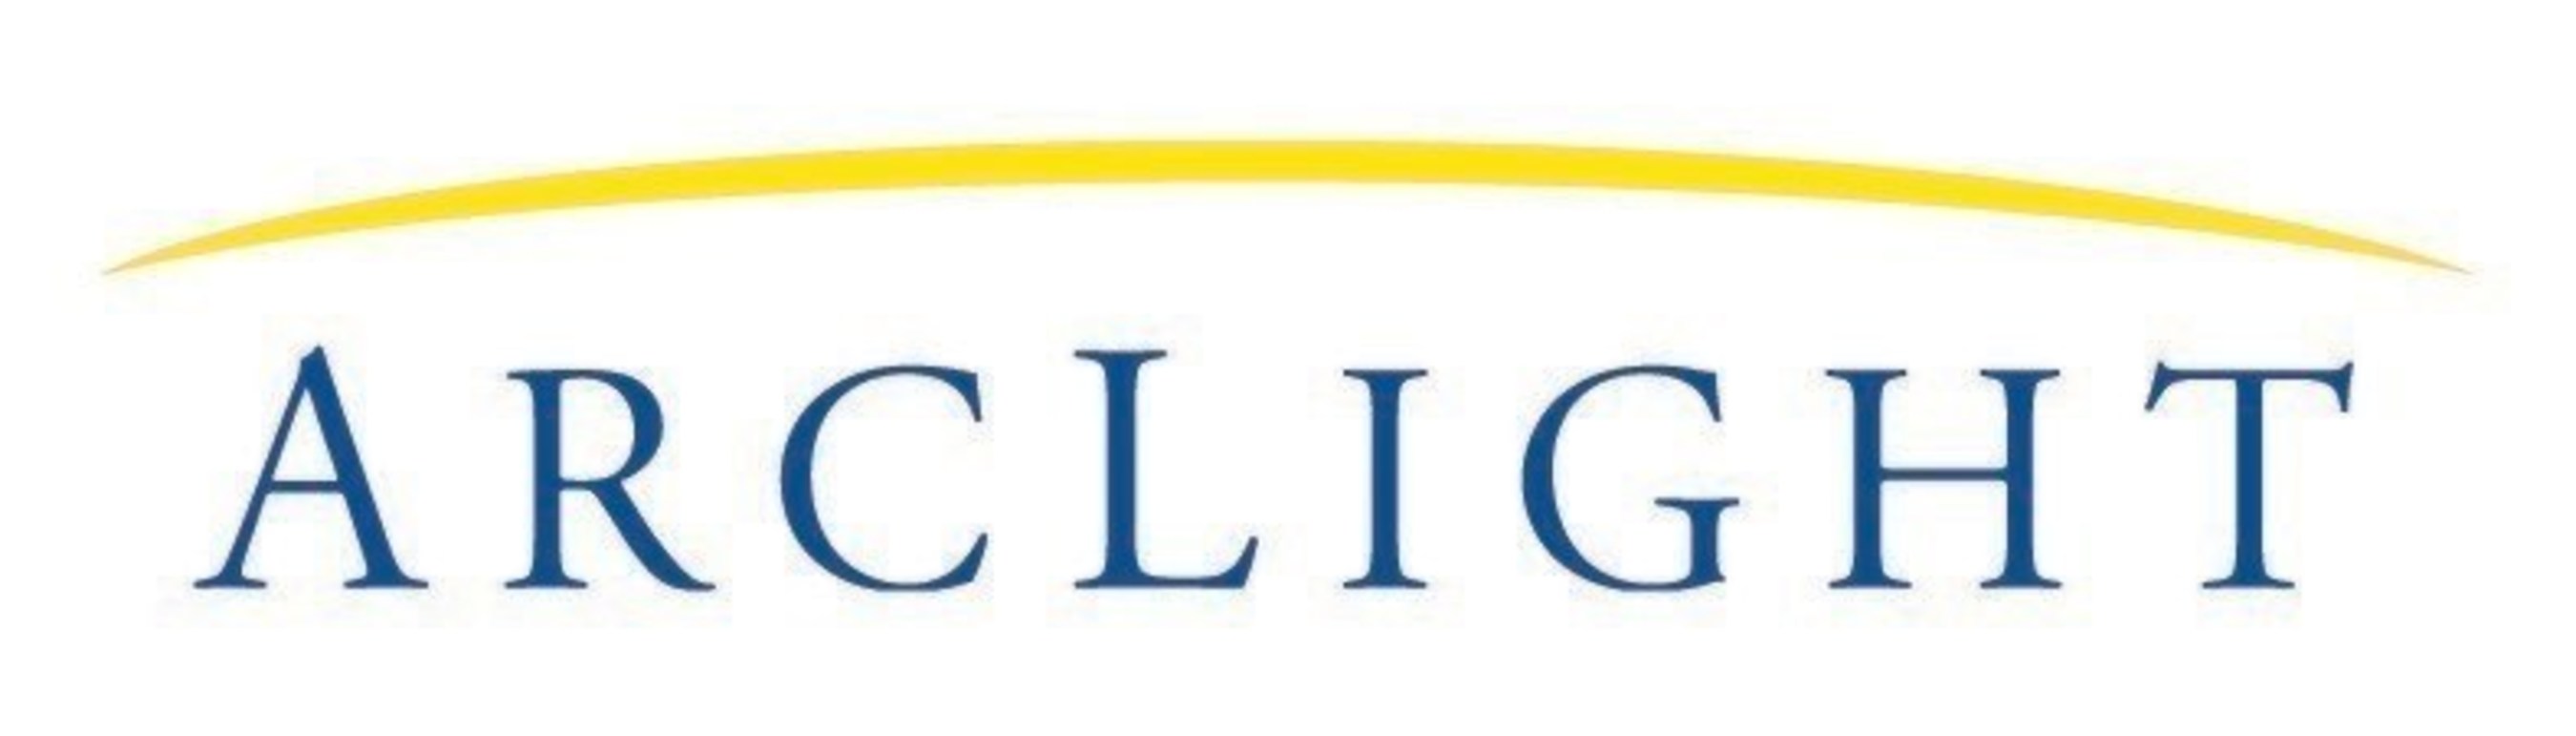 ArcLight Capital Partners, LLC Company Logo